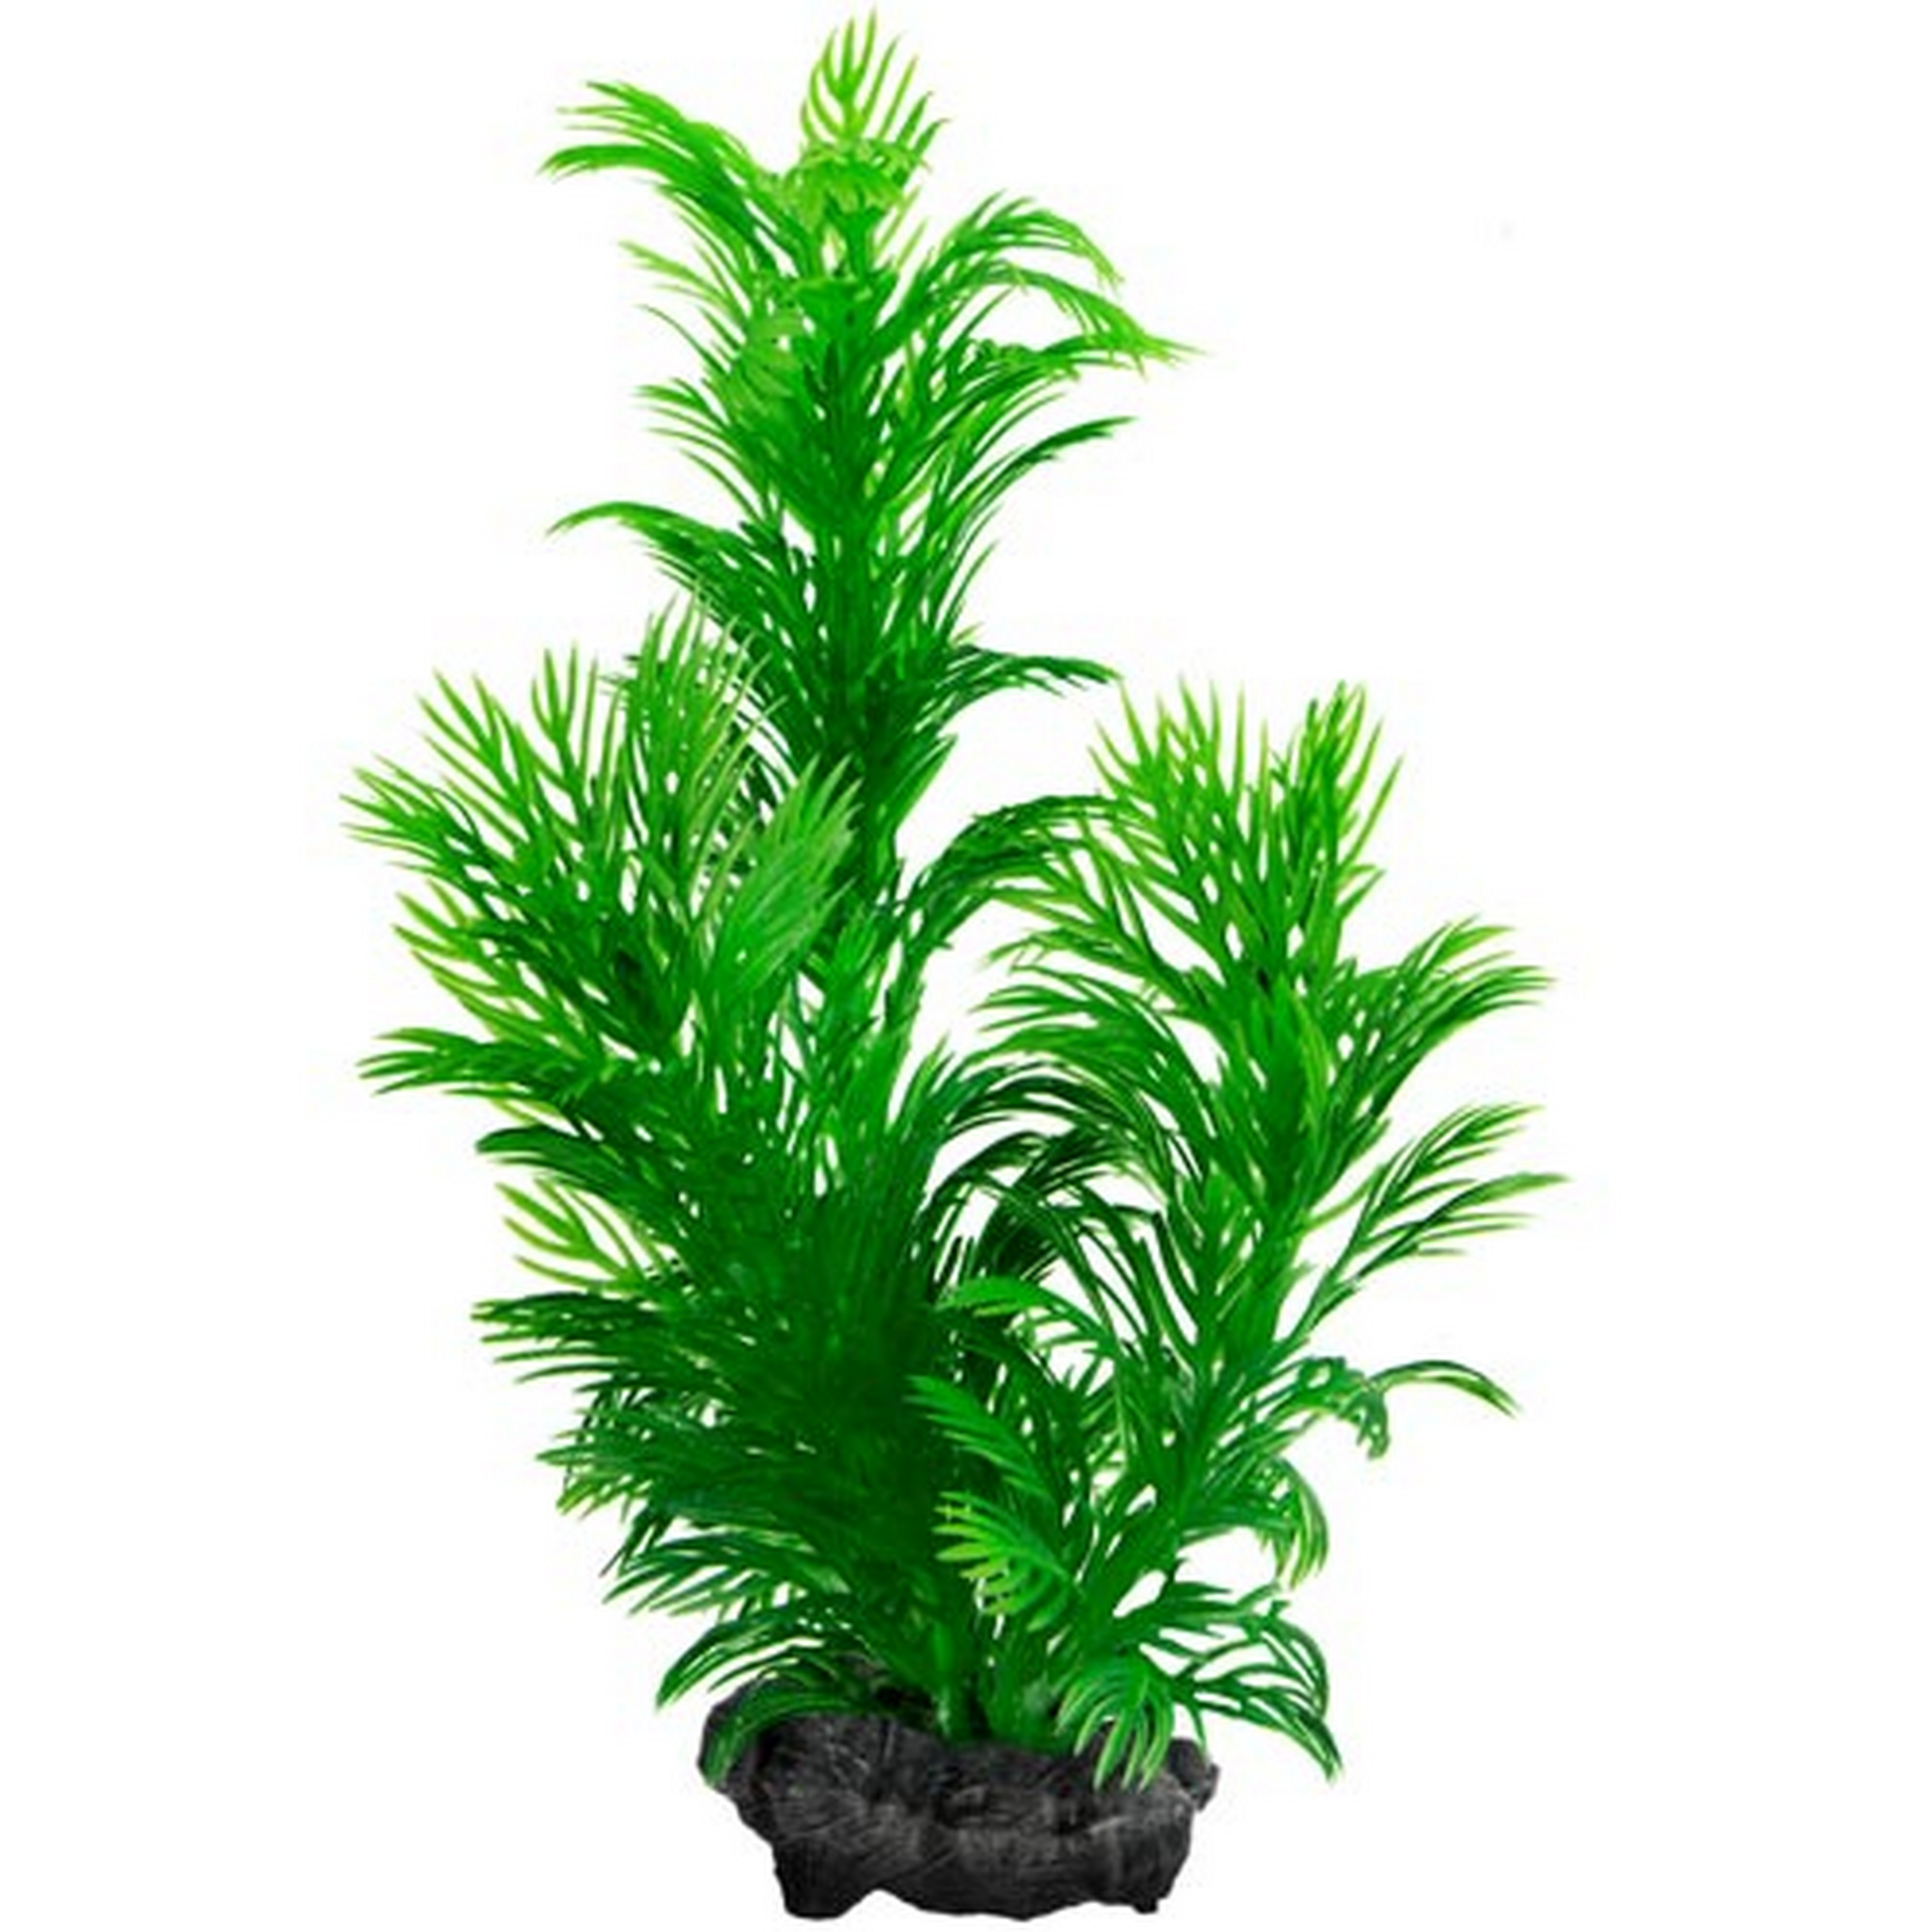 Aquarienpflanze "DecoArt Plantastics" Green Cabomba Gr. M + product picture